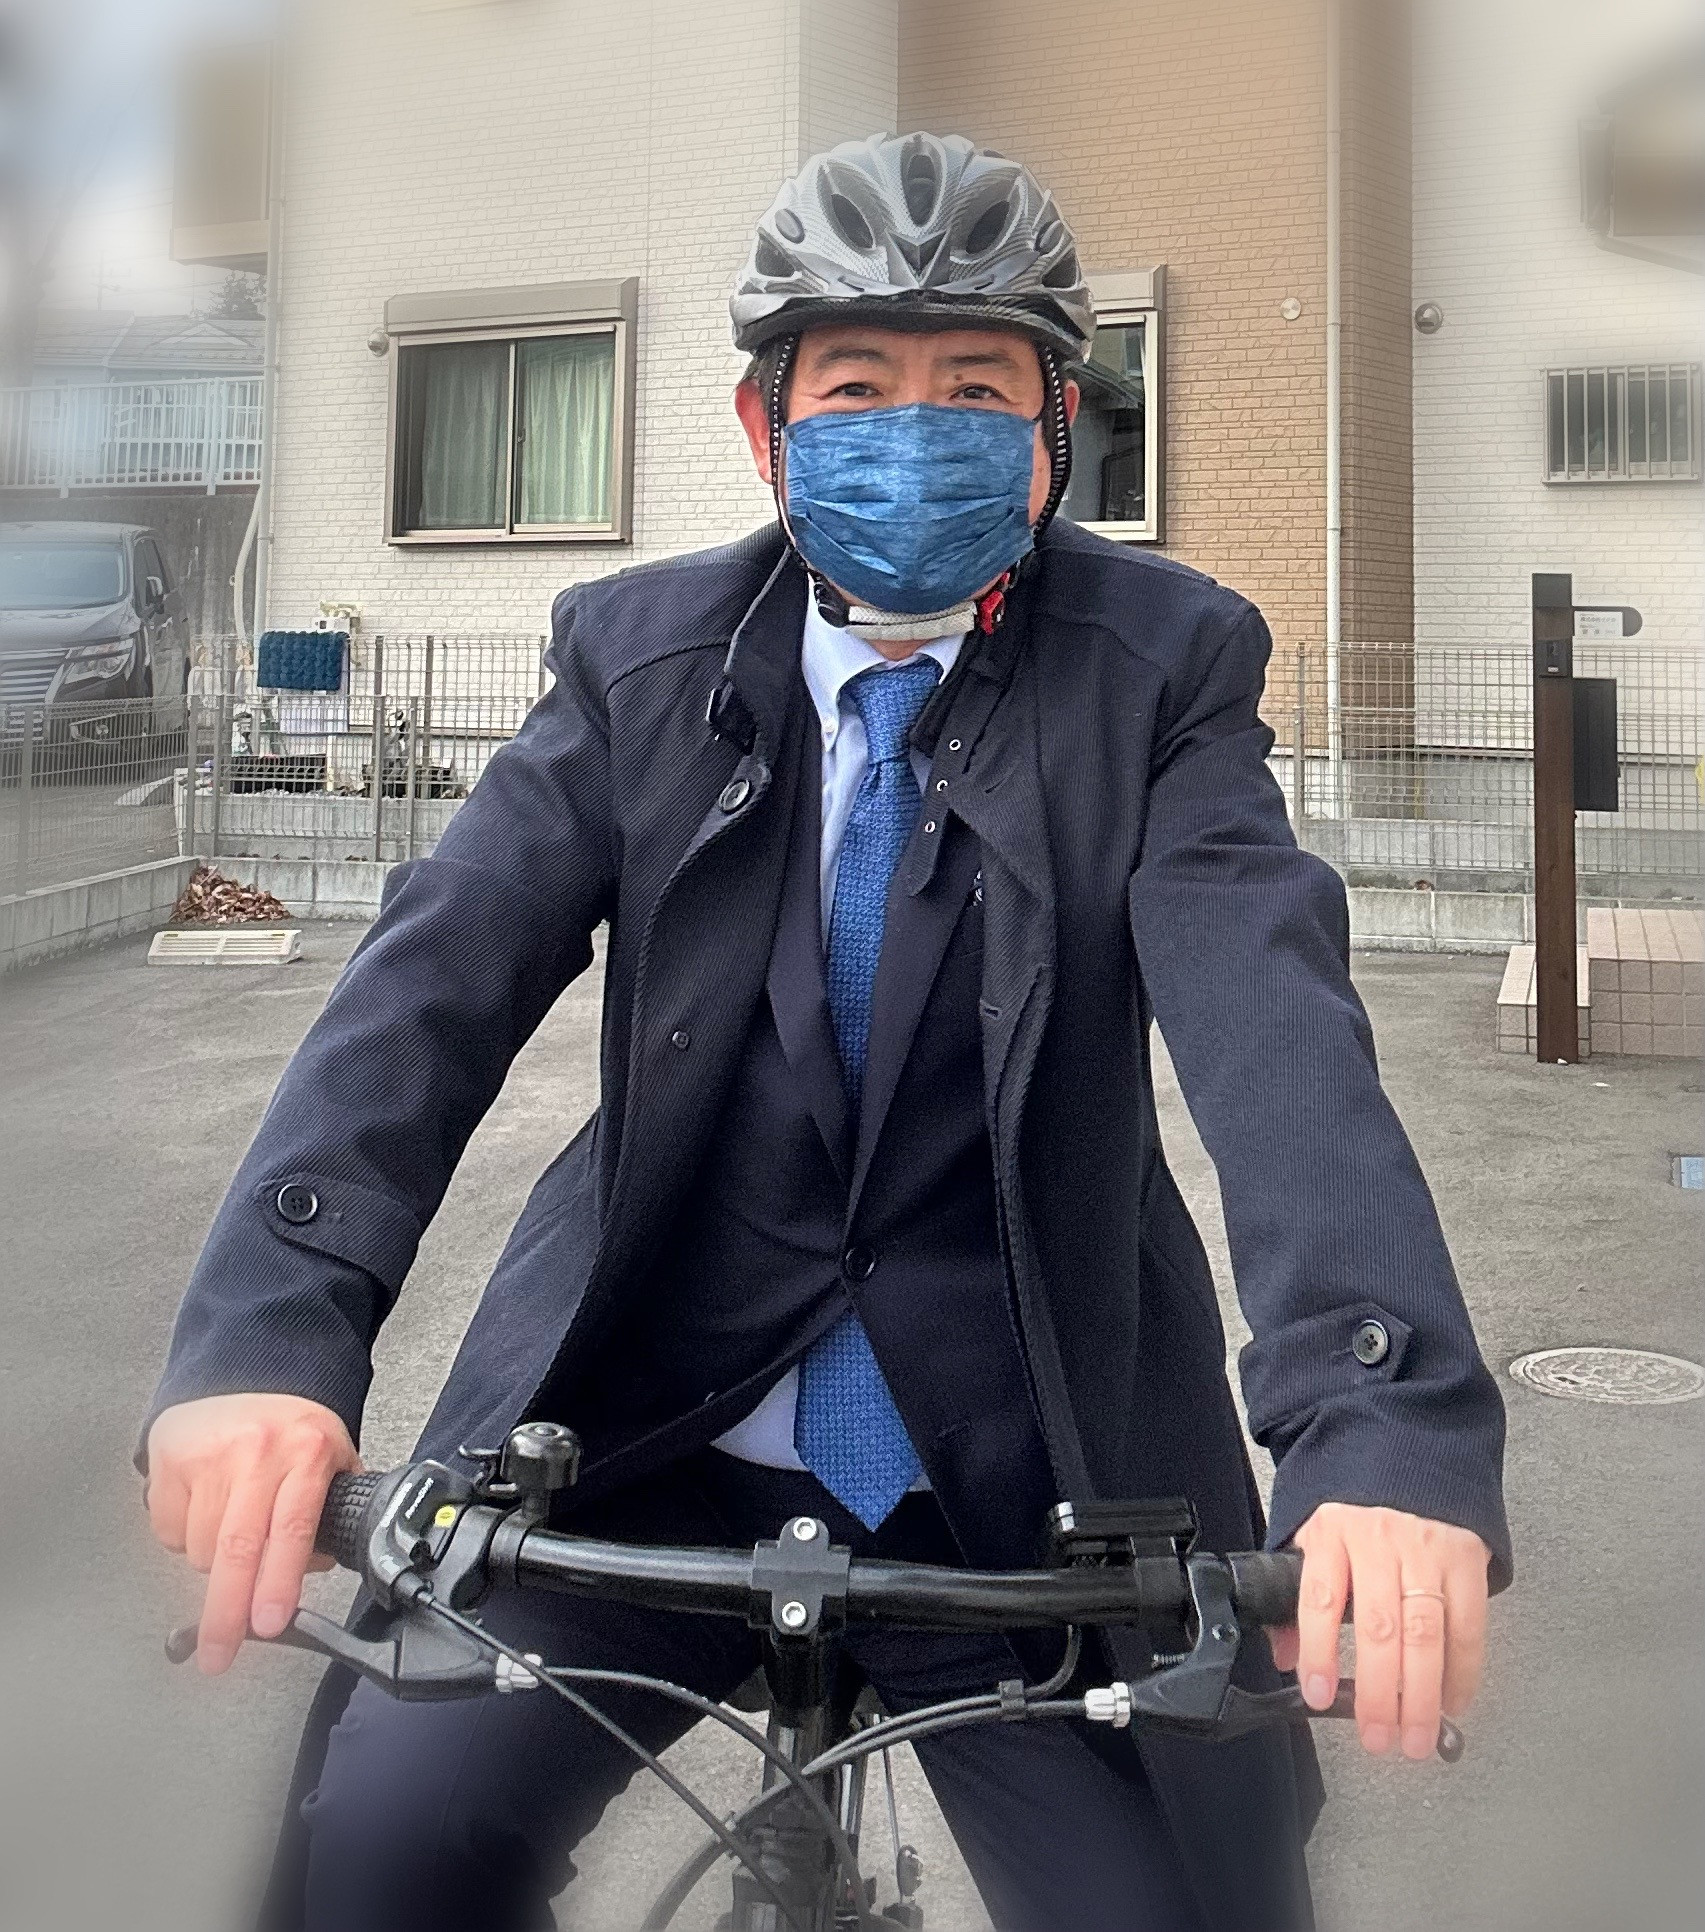 パラメダリストの鹿沼由理恵さんからのアドバイスで、自転車はヘルメットを着用で走行します。  #自転車はヘルメットを着用して走ろう #パラメダリスト #鹿沼由理恵 #町田市議 #ふじた学